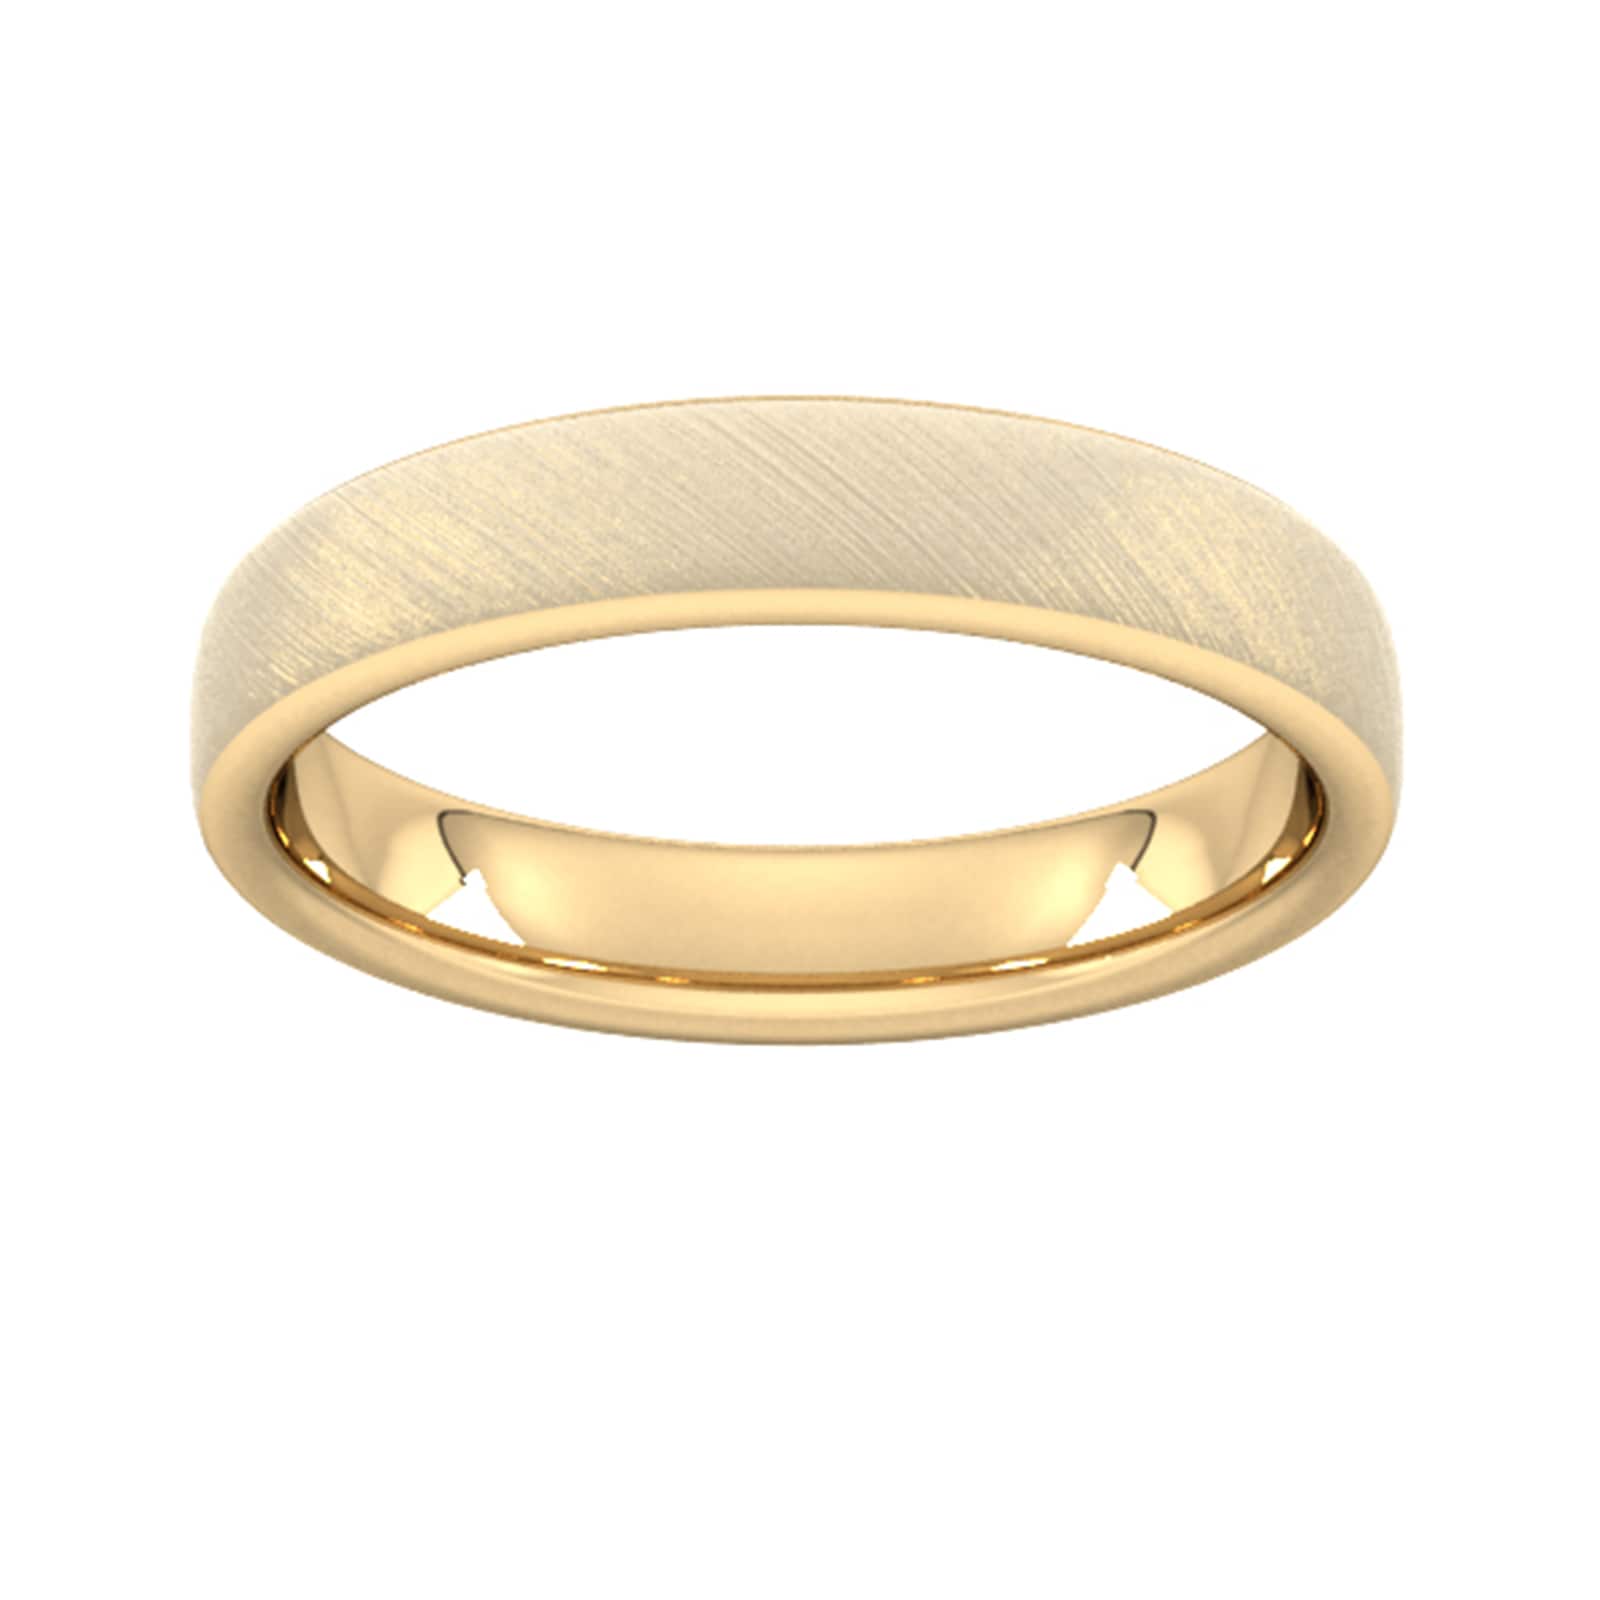 4mm Slight Court Heavy Diagonal Matt Finish Wedding Ring In 18 Carat Yellow Gold - Ring Size V